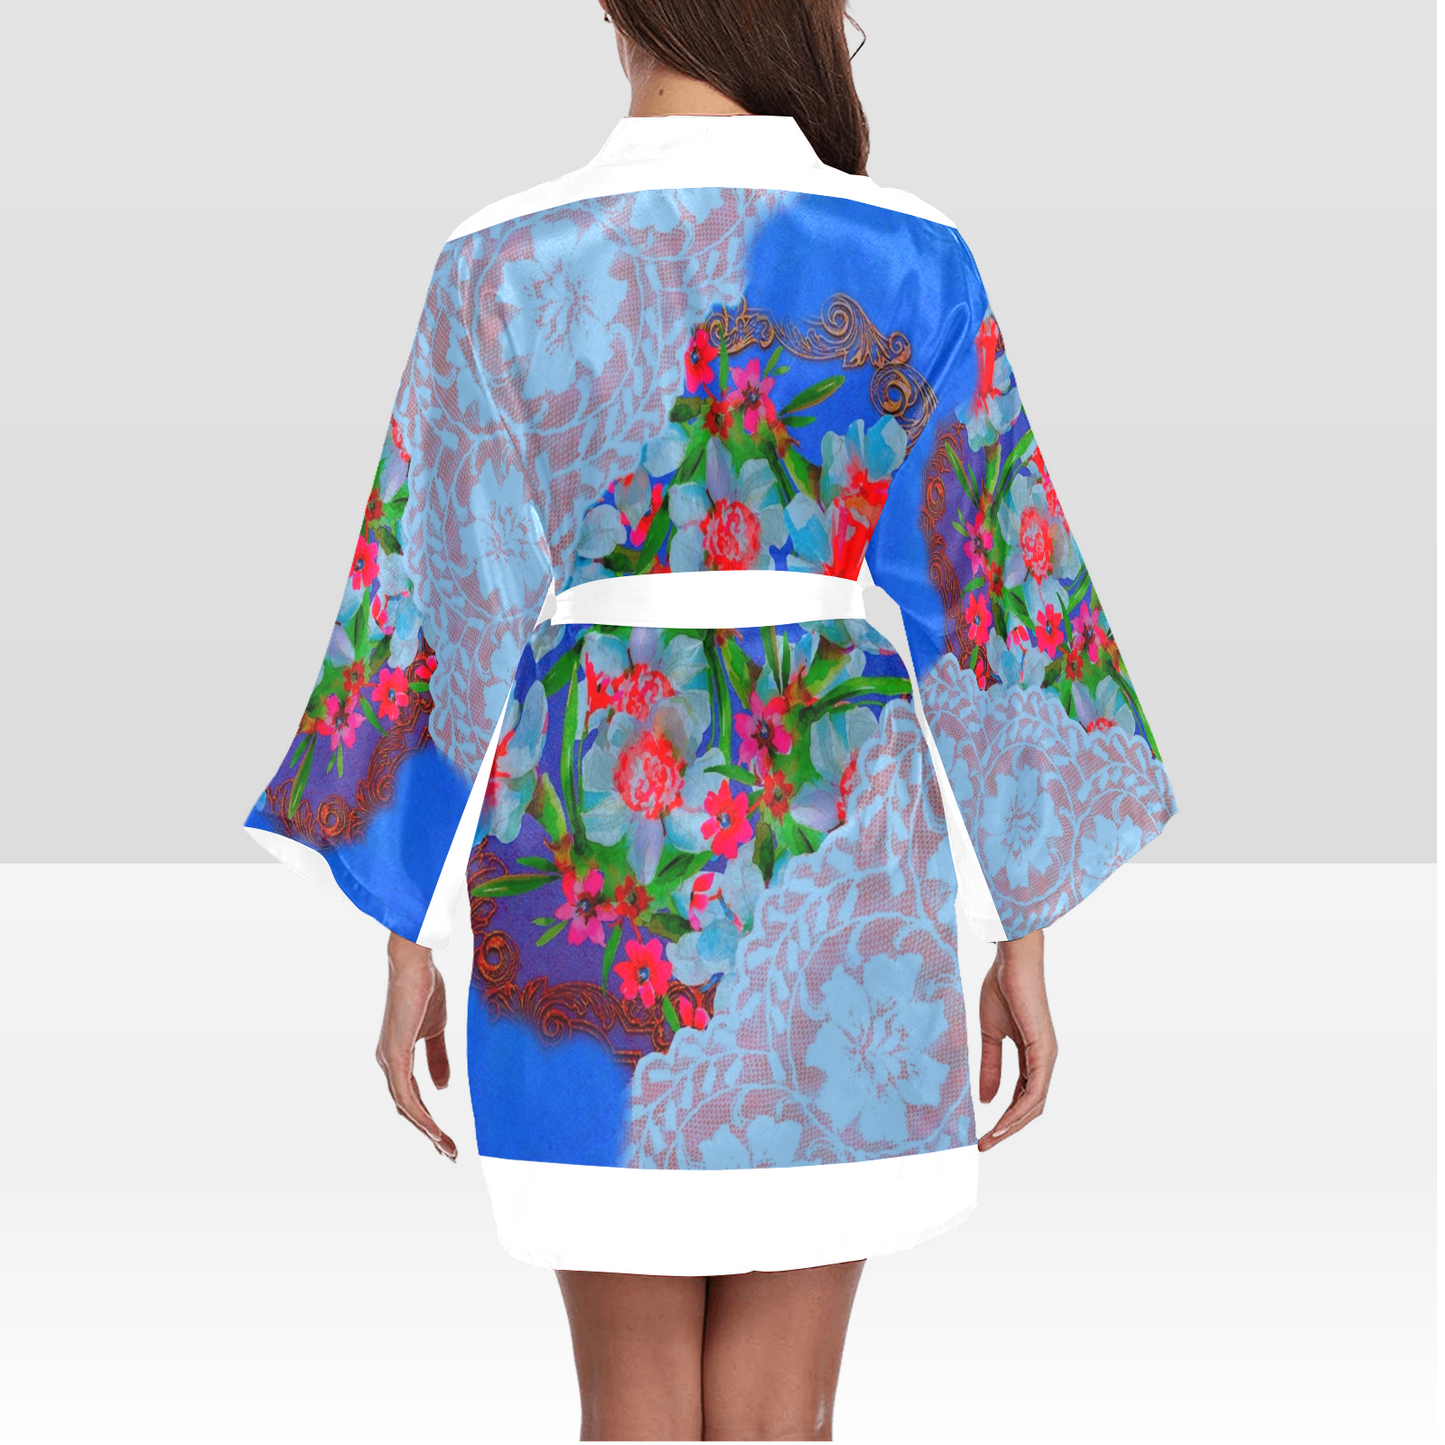 Victorian Lace Kimono Robe, Black or White Trim, Sizes XS to 2XL, Design 46